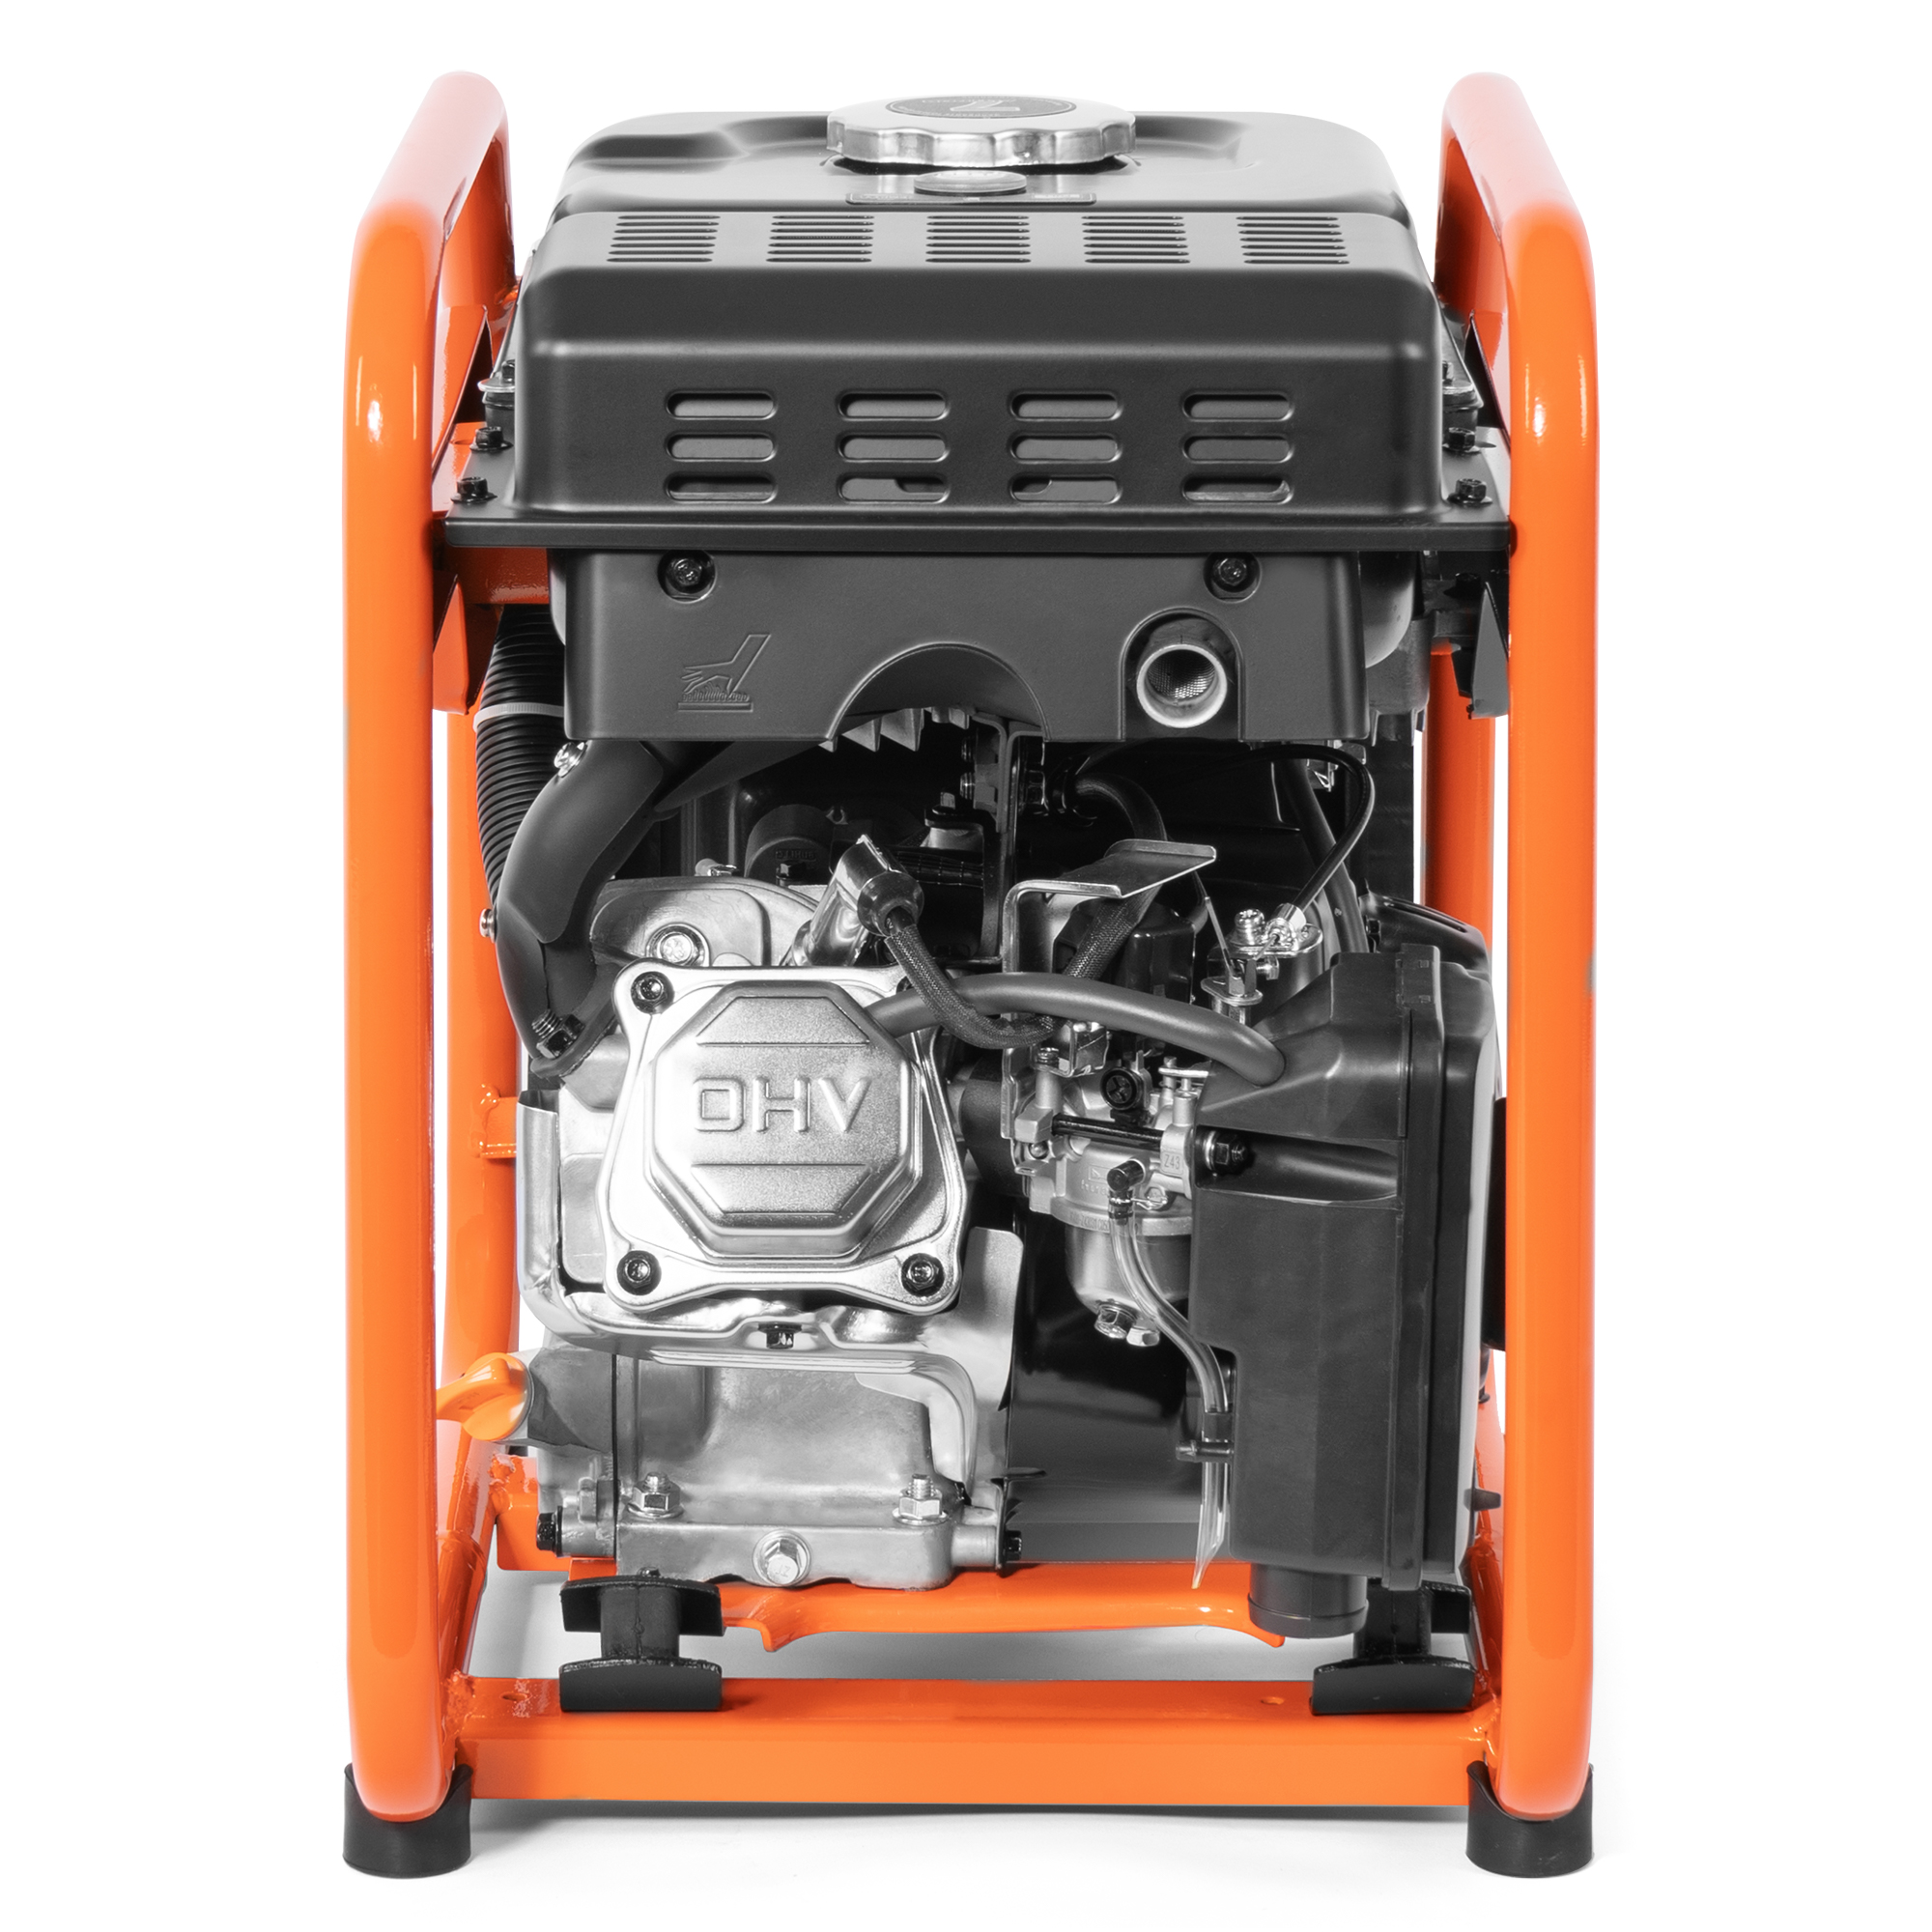 Бензиновый генератор Daewoo инверторный (GDA 4400I), цвет оранжевый series 215 - фото 3